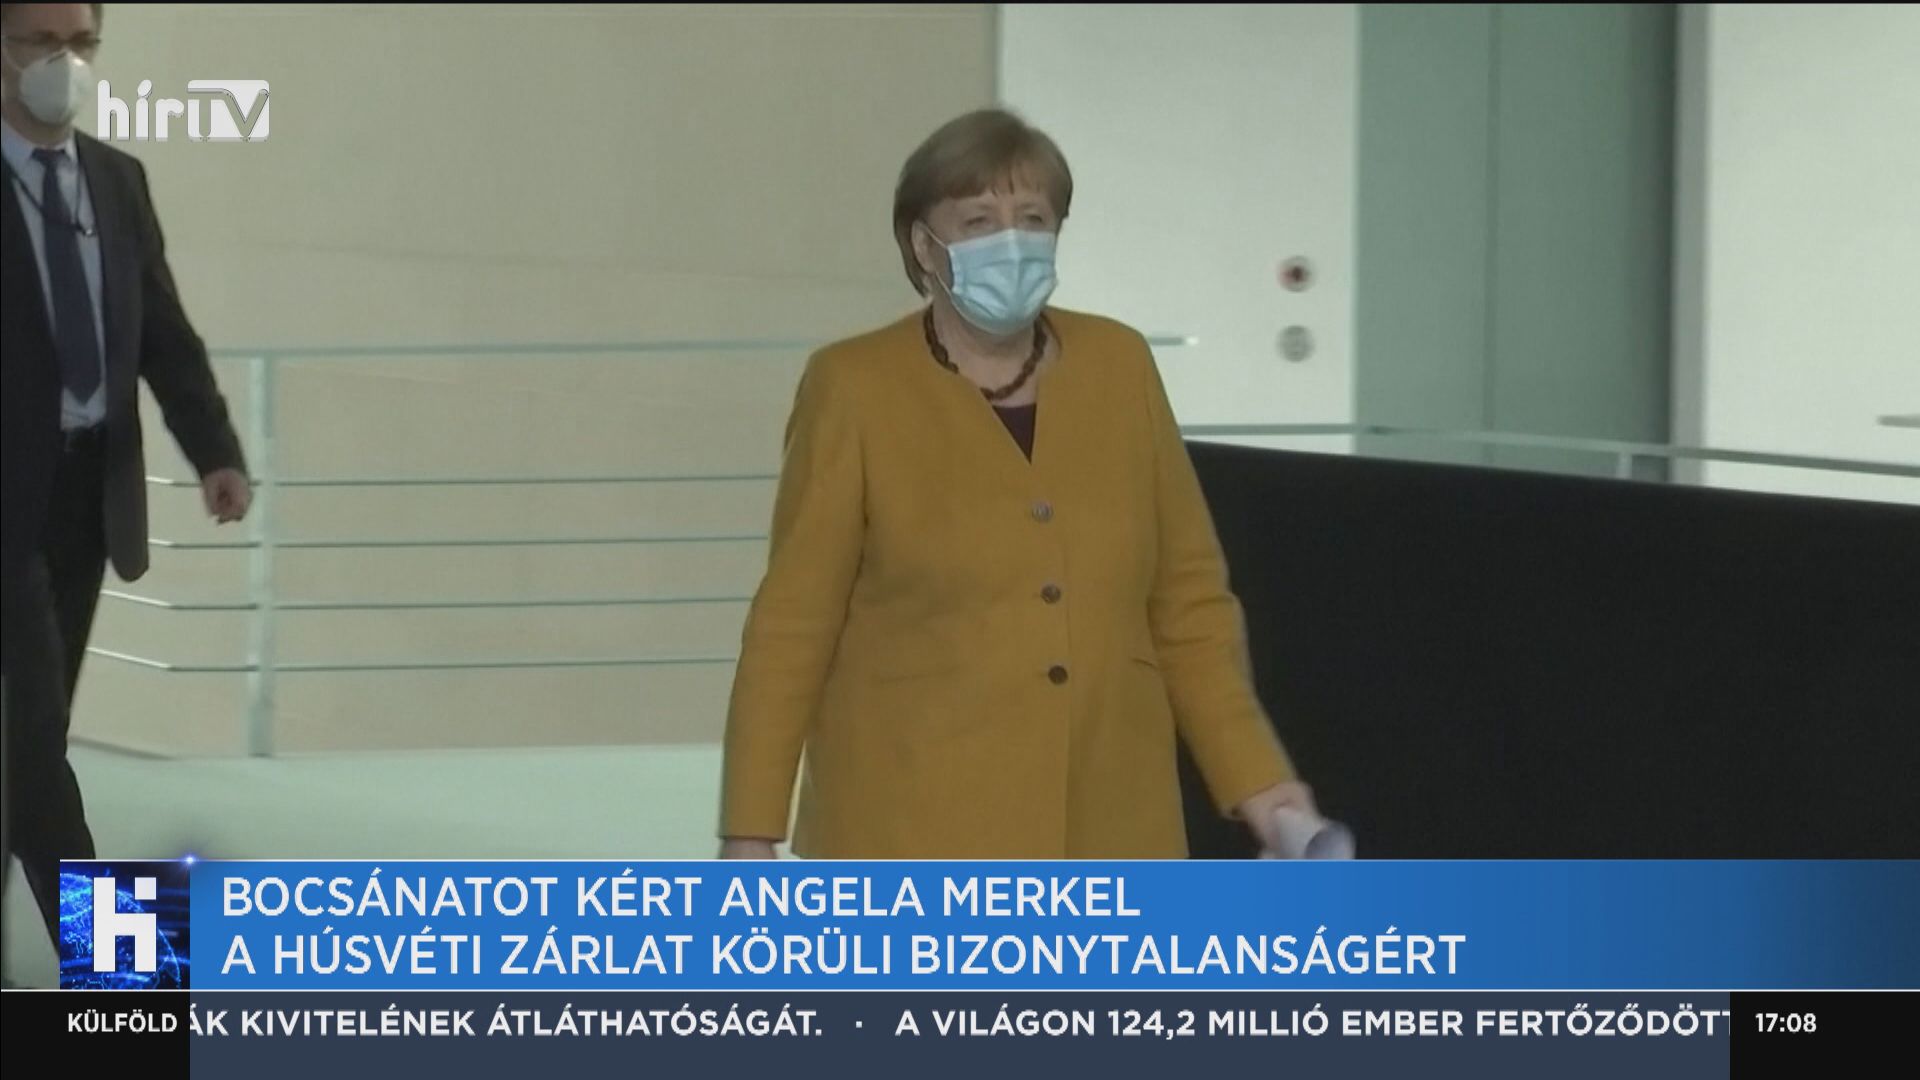 Bocsánatot kért Angela Merkel a húsvéti zárlat körüli bizonytalanságért